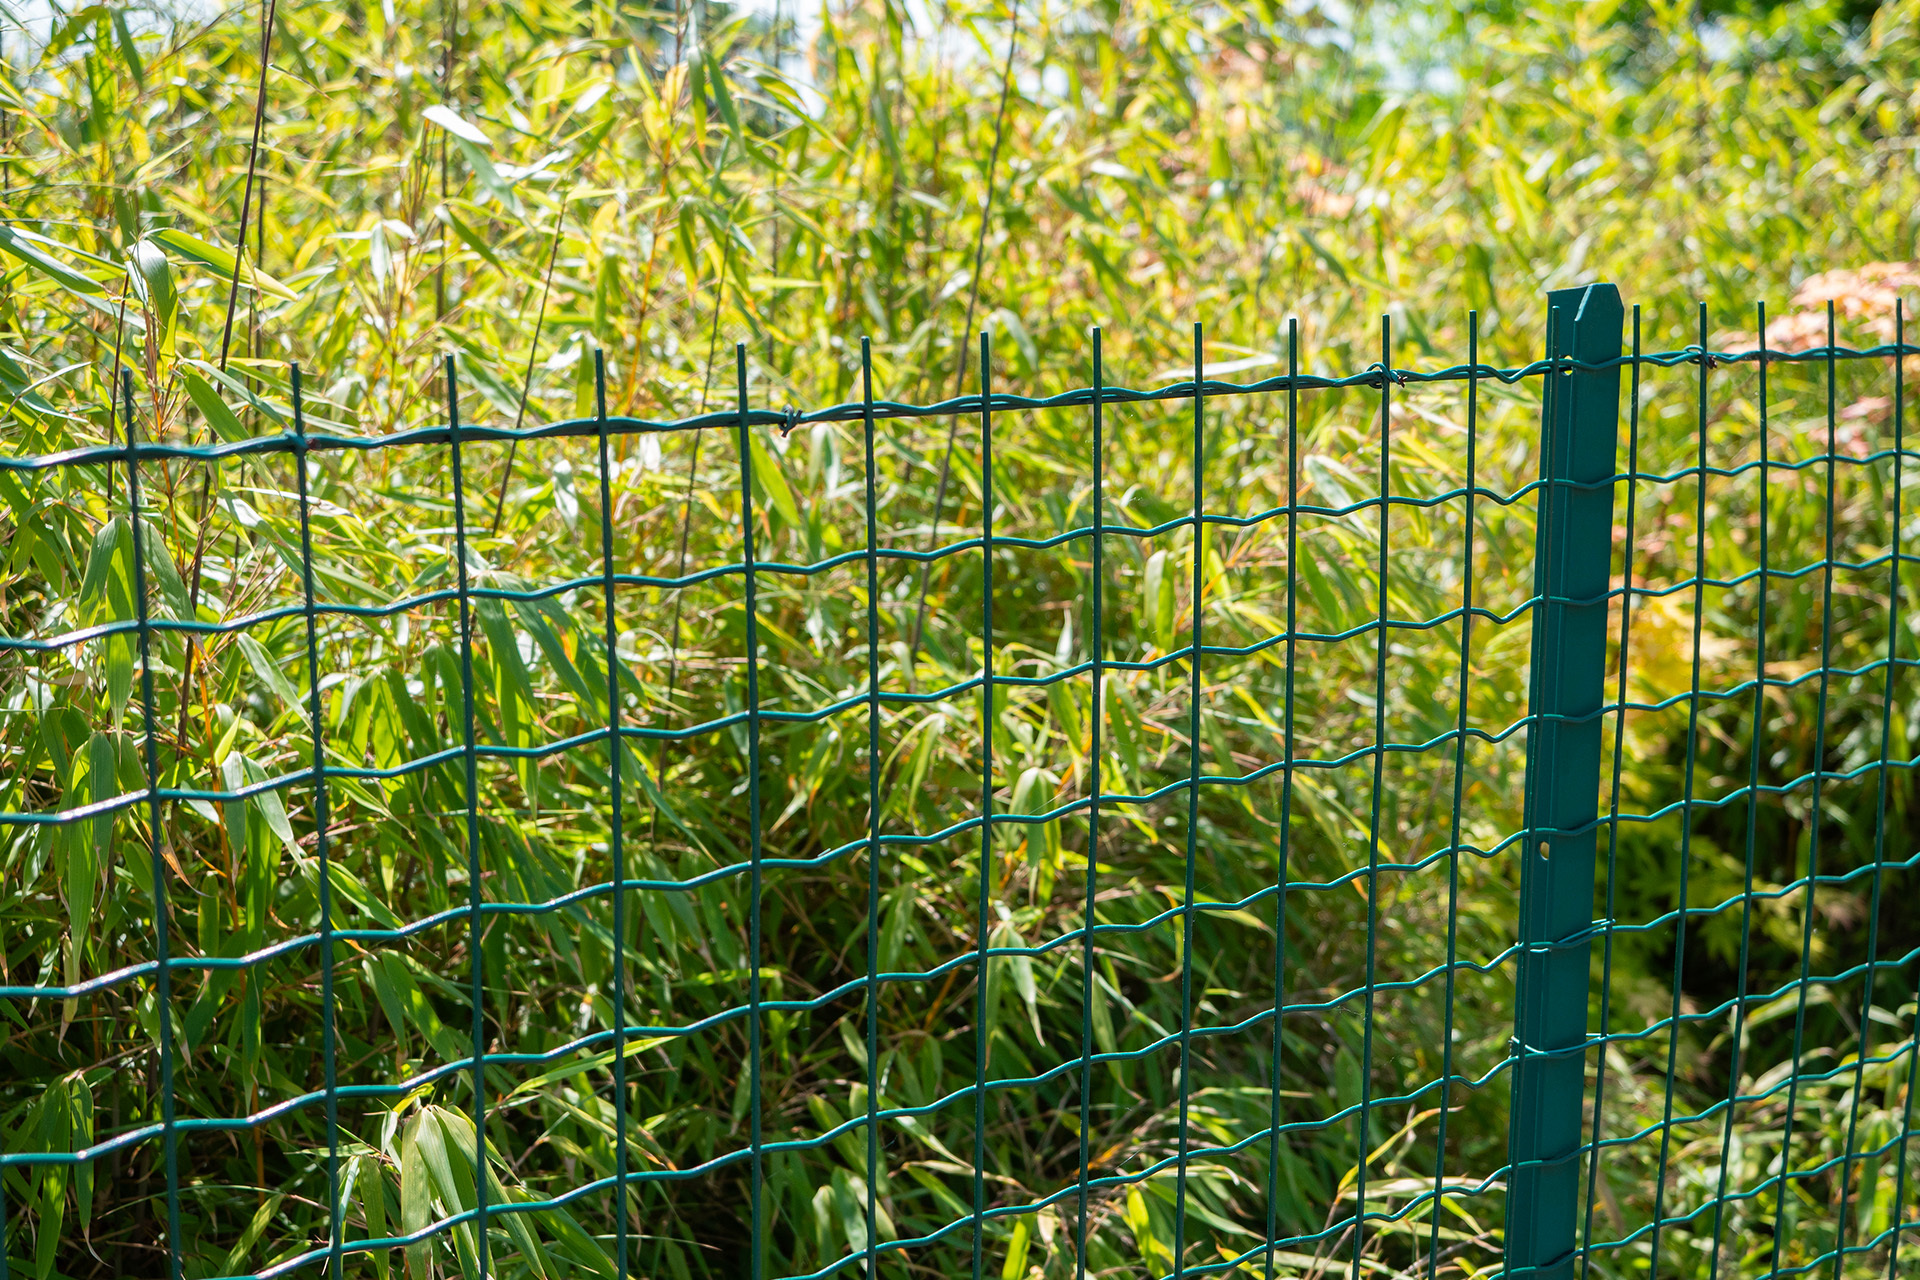 Connaître les différents types de clôtures pour faire le bon choix.